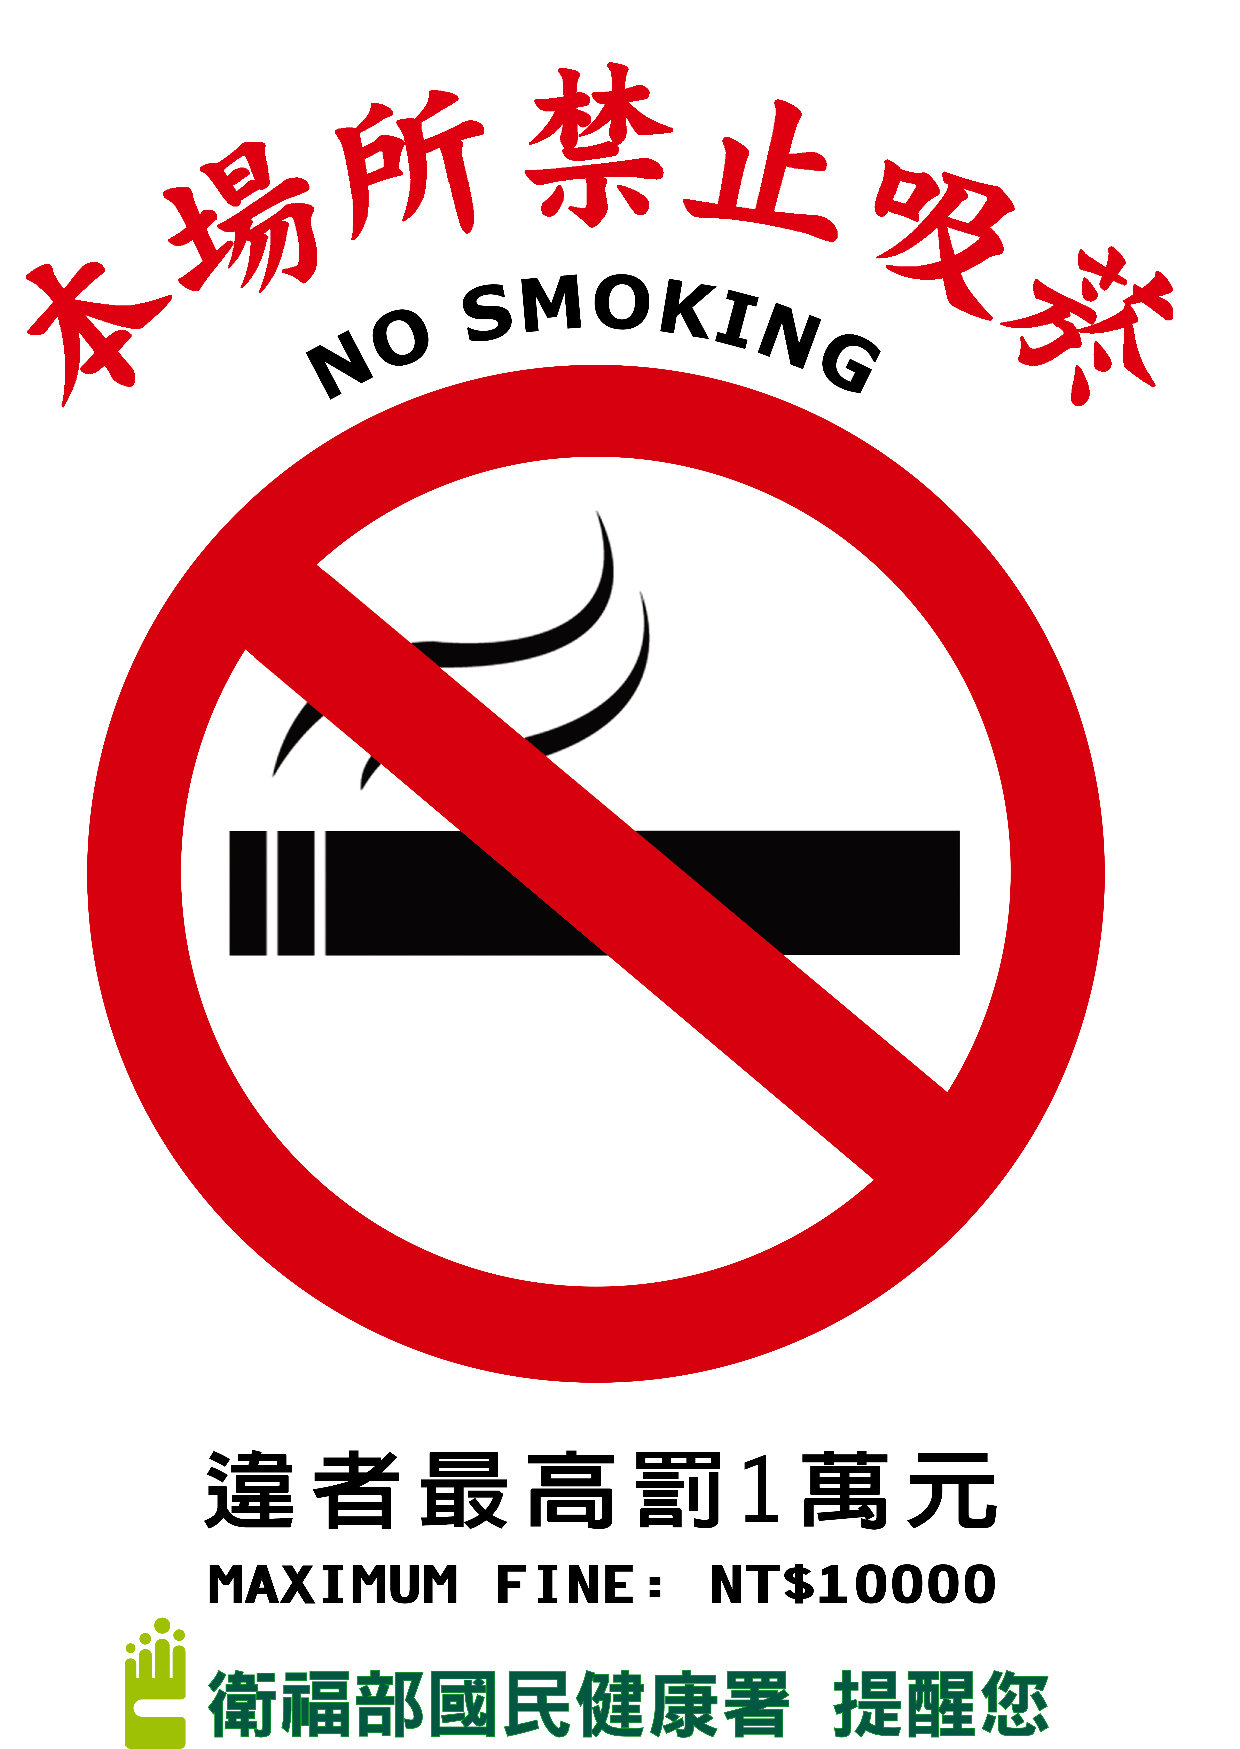 本場所禁止吸菸，違者最高罰1萬元(海報-A3)